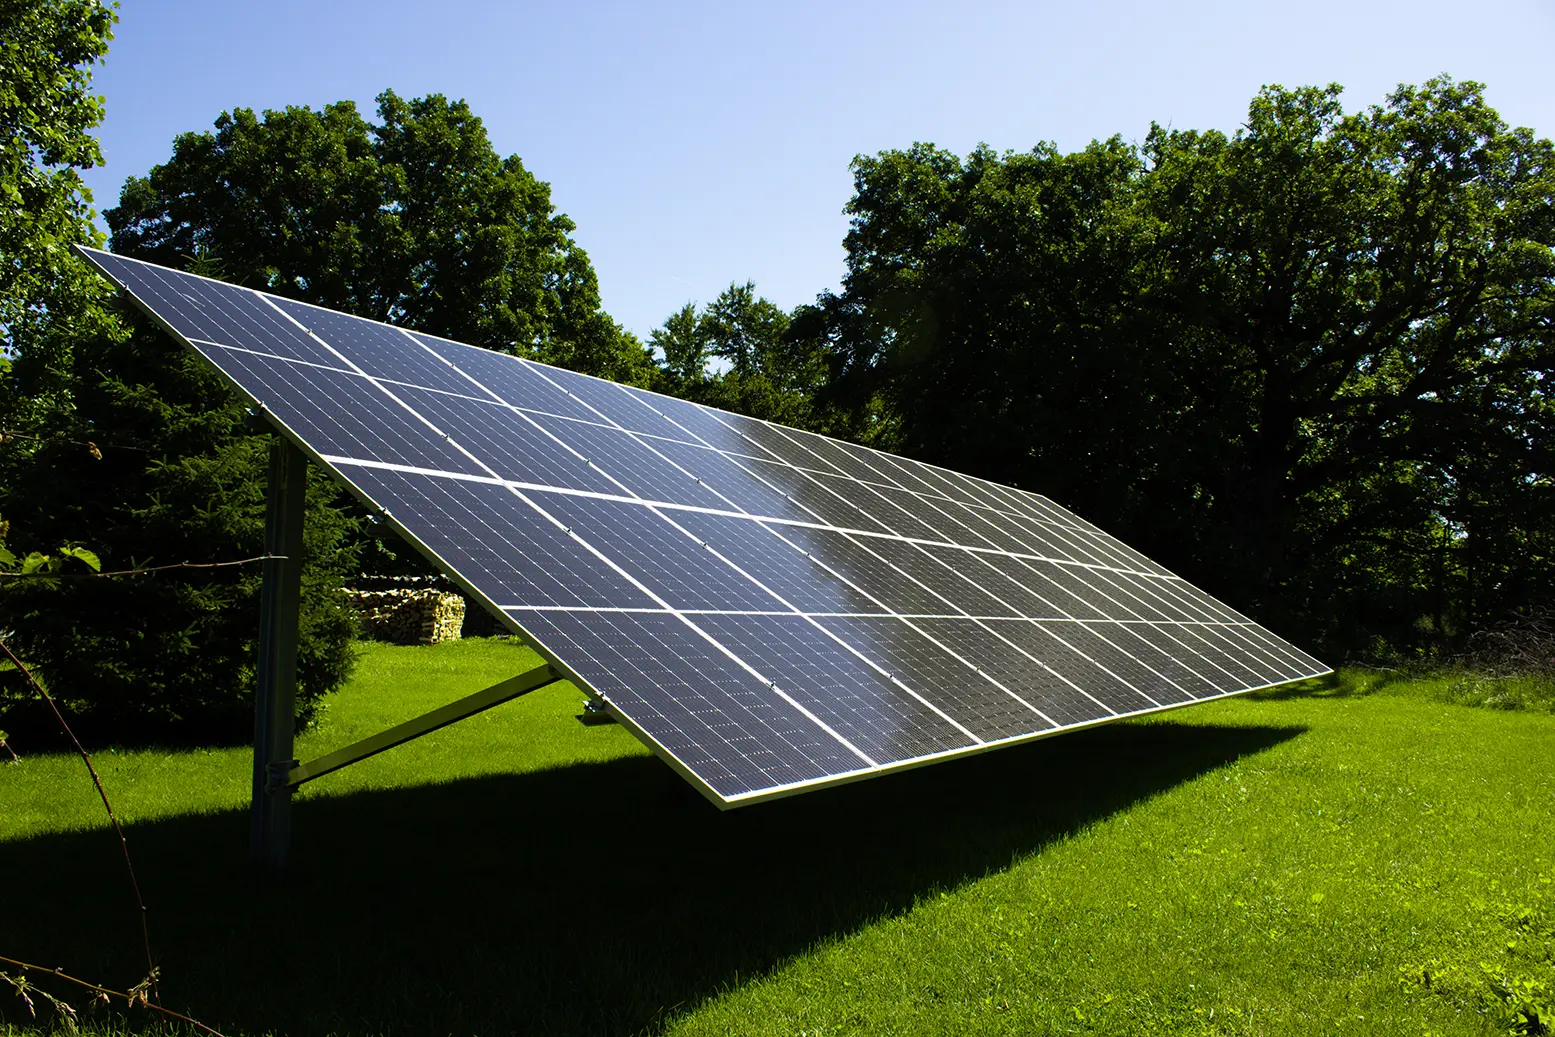 springfield illinois solar panels